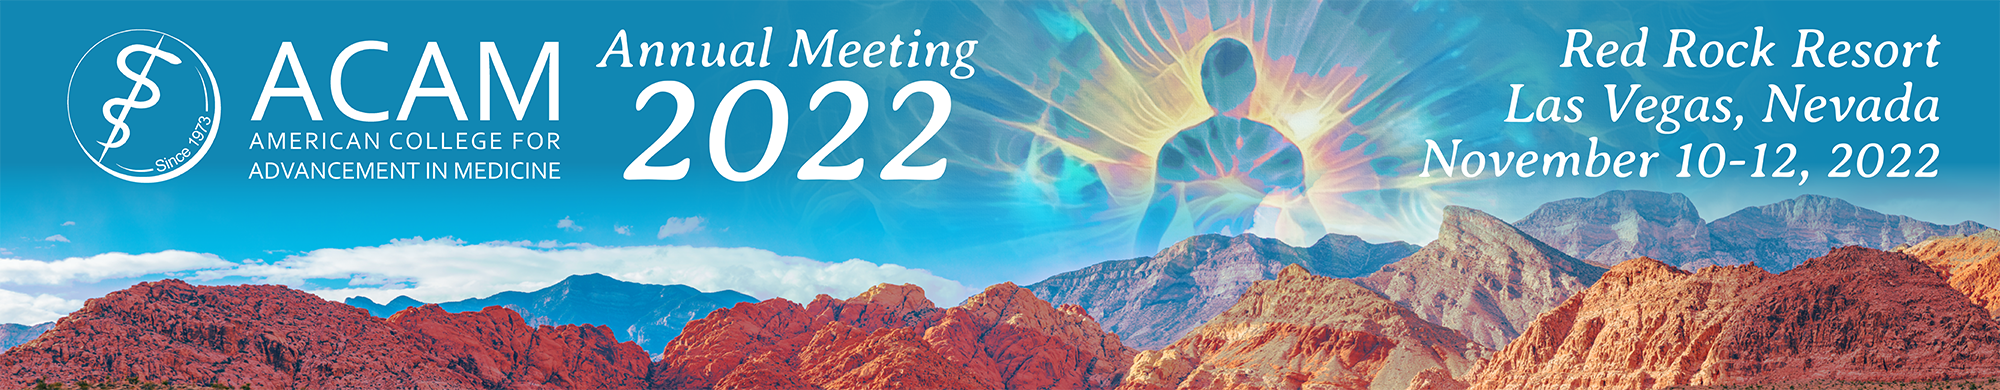 ACAM 2022 Annual Meeting